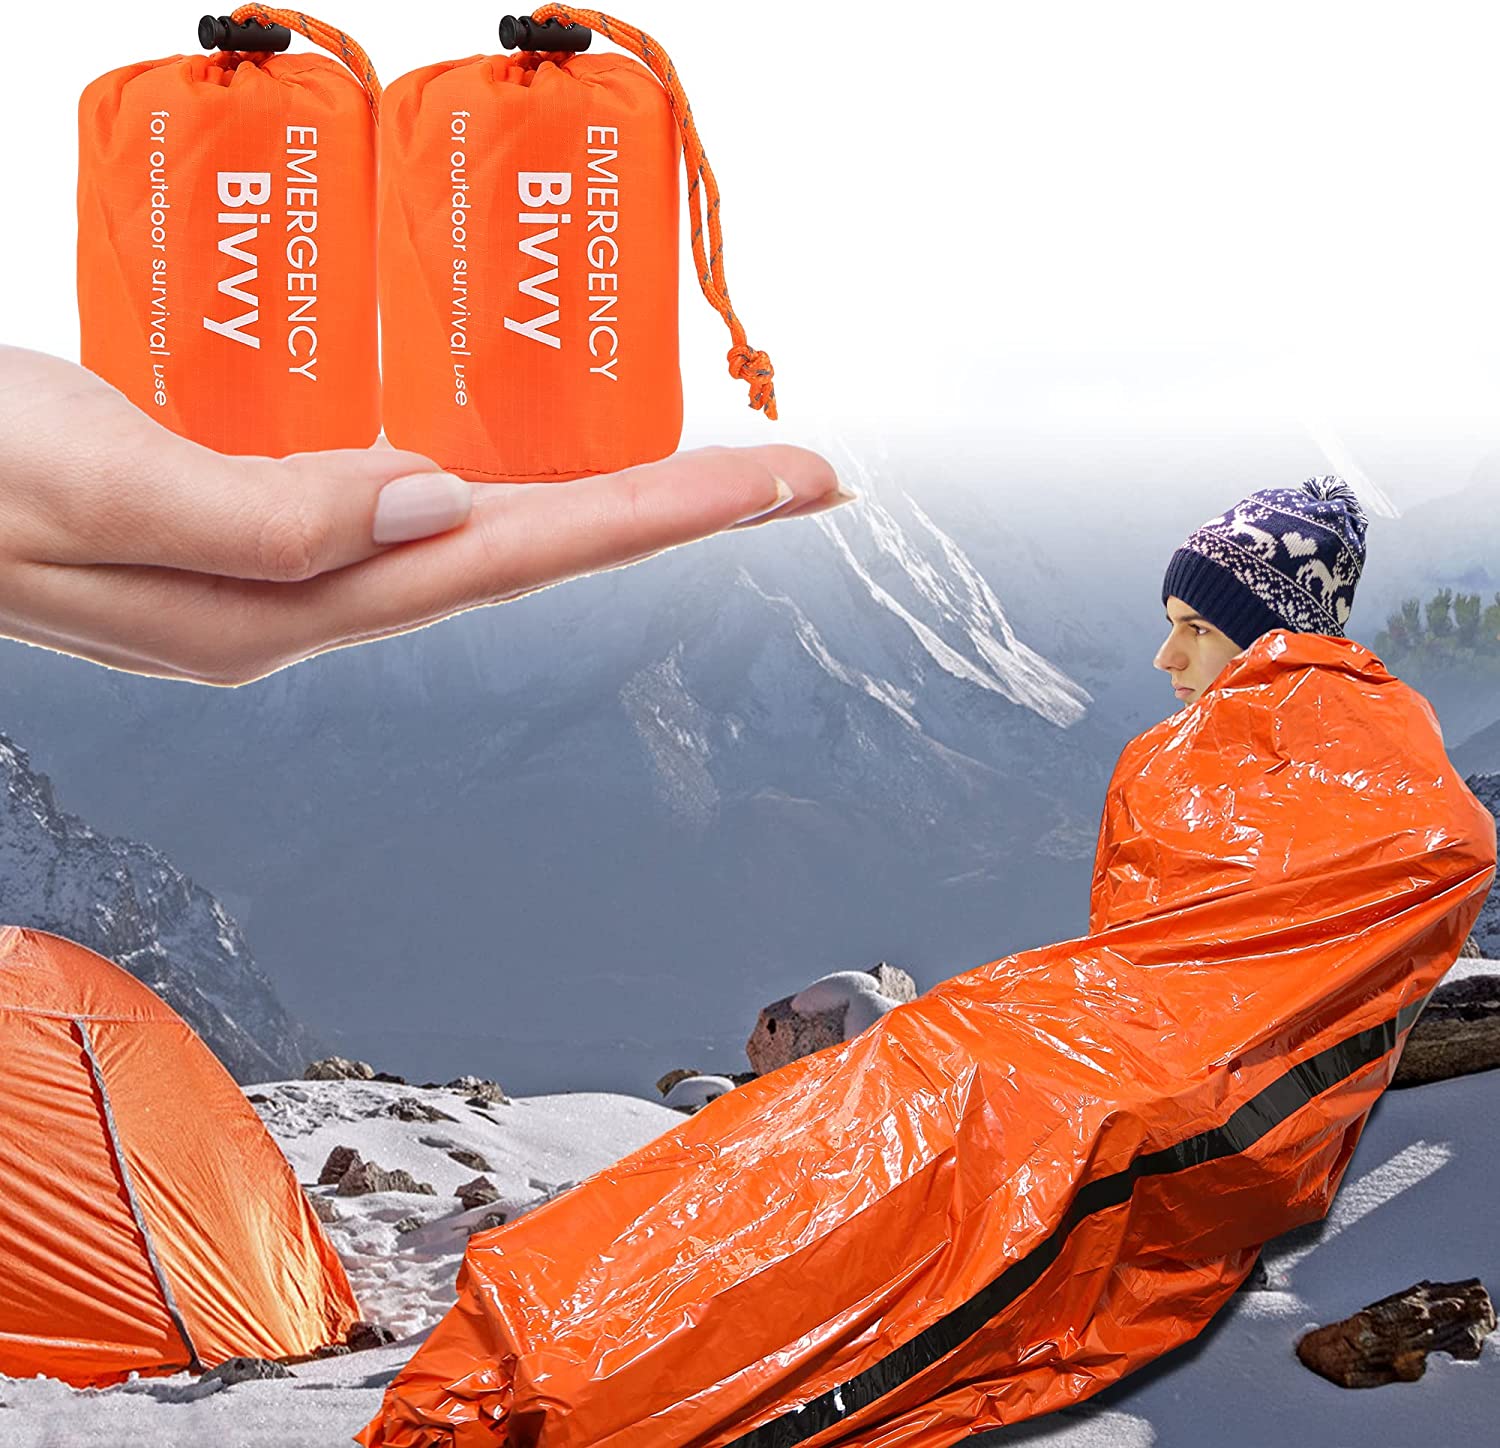 Rettungsdecke 2 Stück Biwaksack Notfall Wasserdicht Survival Schlafsack Erste Hilfe Wärmedecke Schutzdecke Notfalldecke Ultraleicht Hitzeabweisend